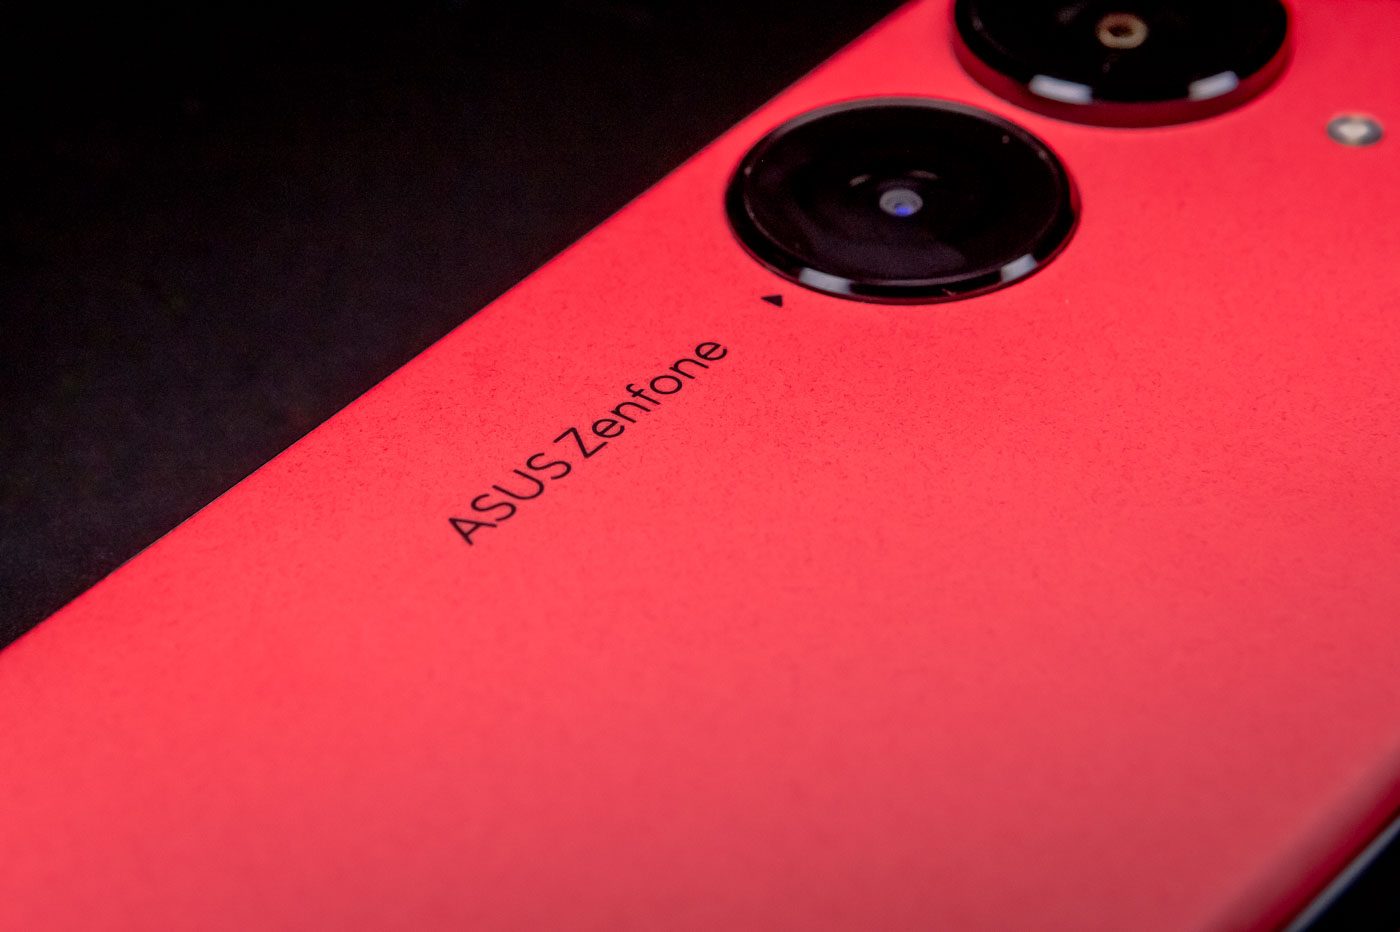 Asus Zenfone 10 : Le smartphone tant attendu est maintenant disponible en  précommande aux États-Unis